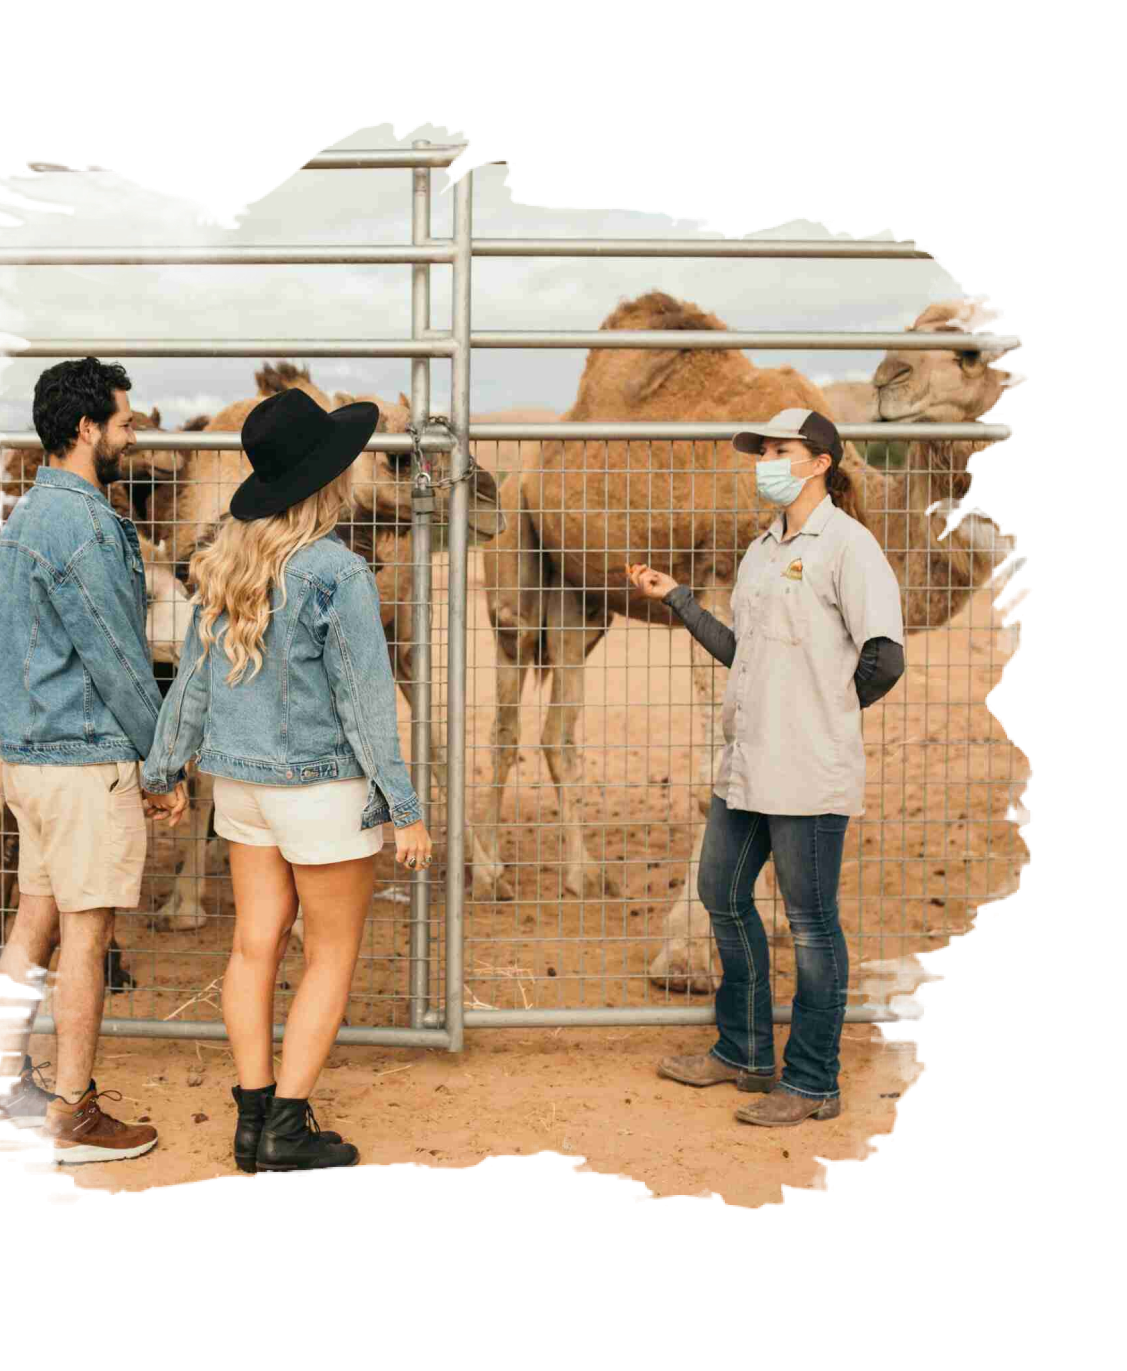 camel safari.com